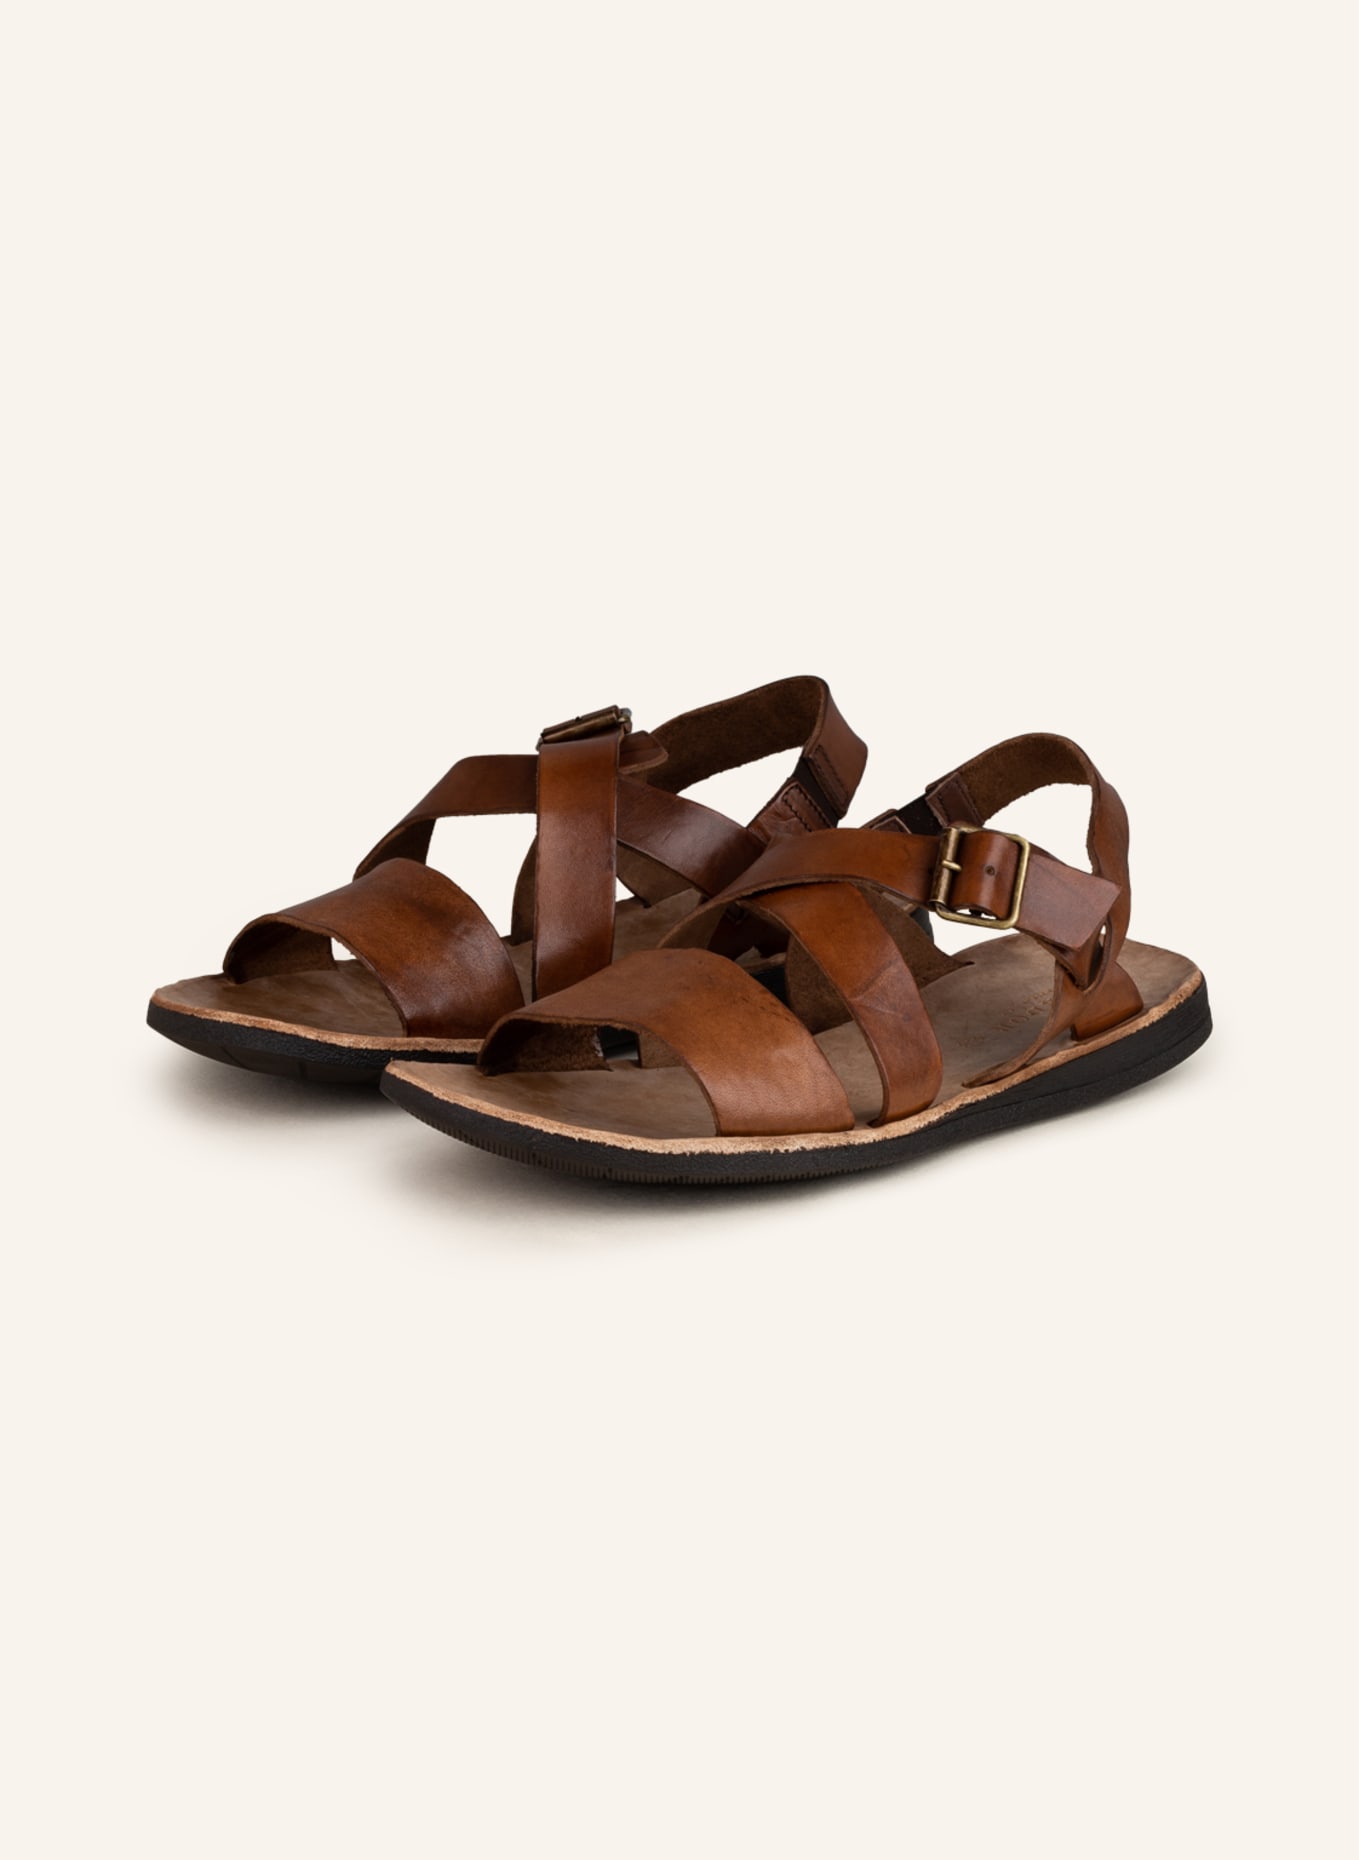 BRADOR Sandals TCAPO, Color: BROWN (Image 1)